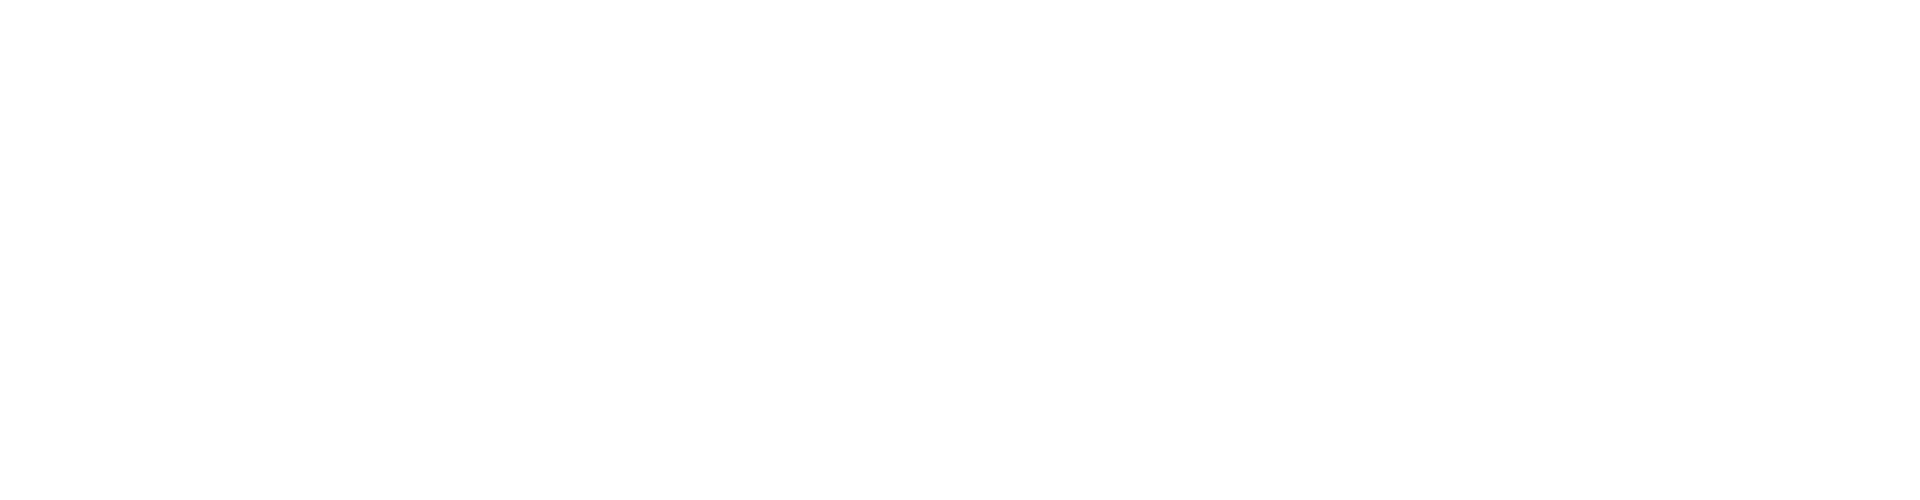 Kendalls Kocktails Logo